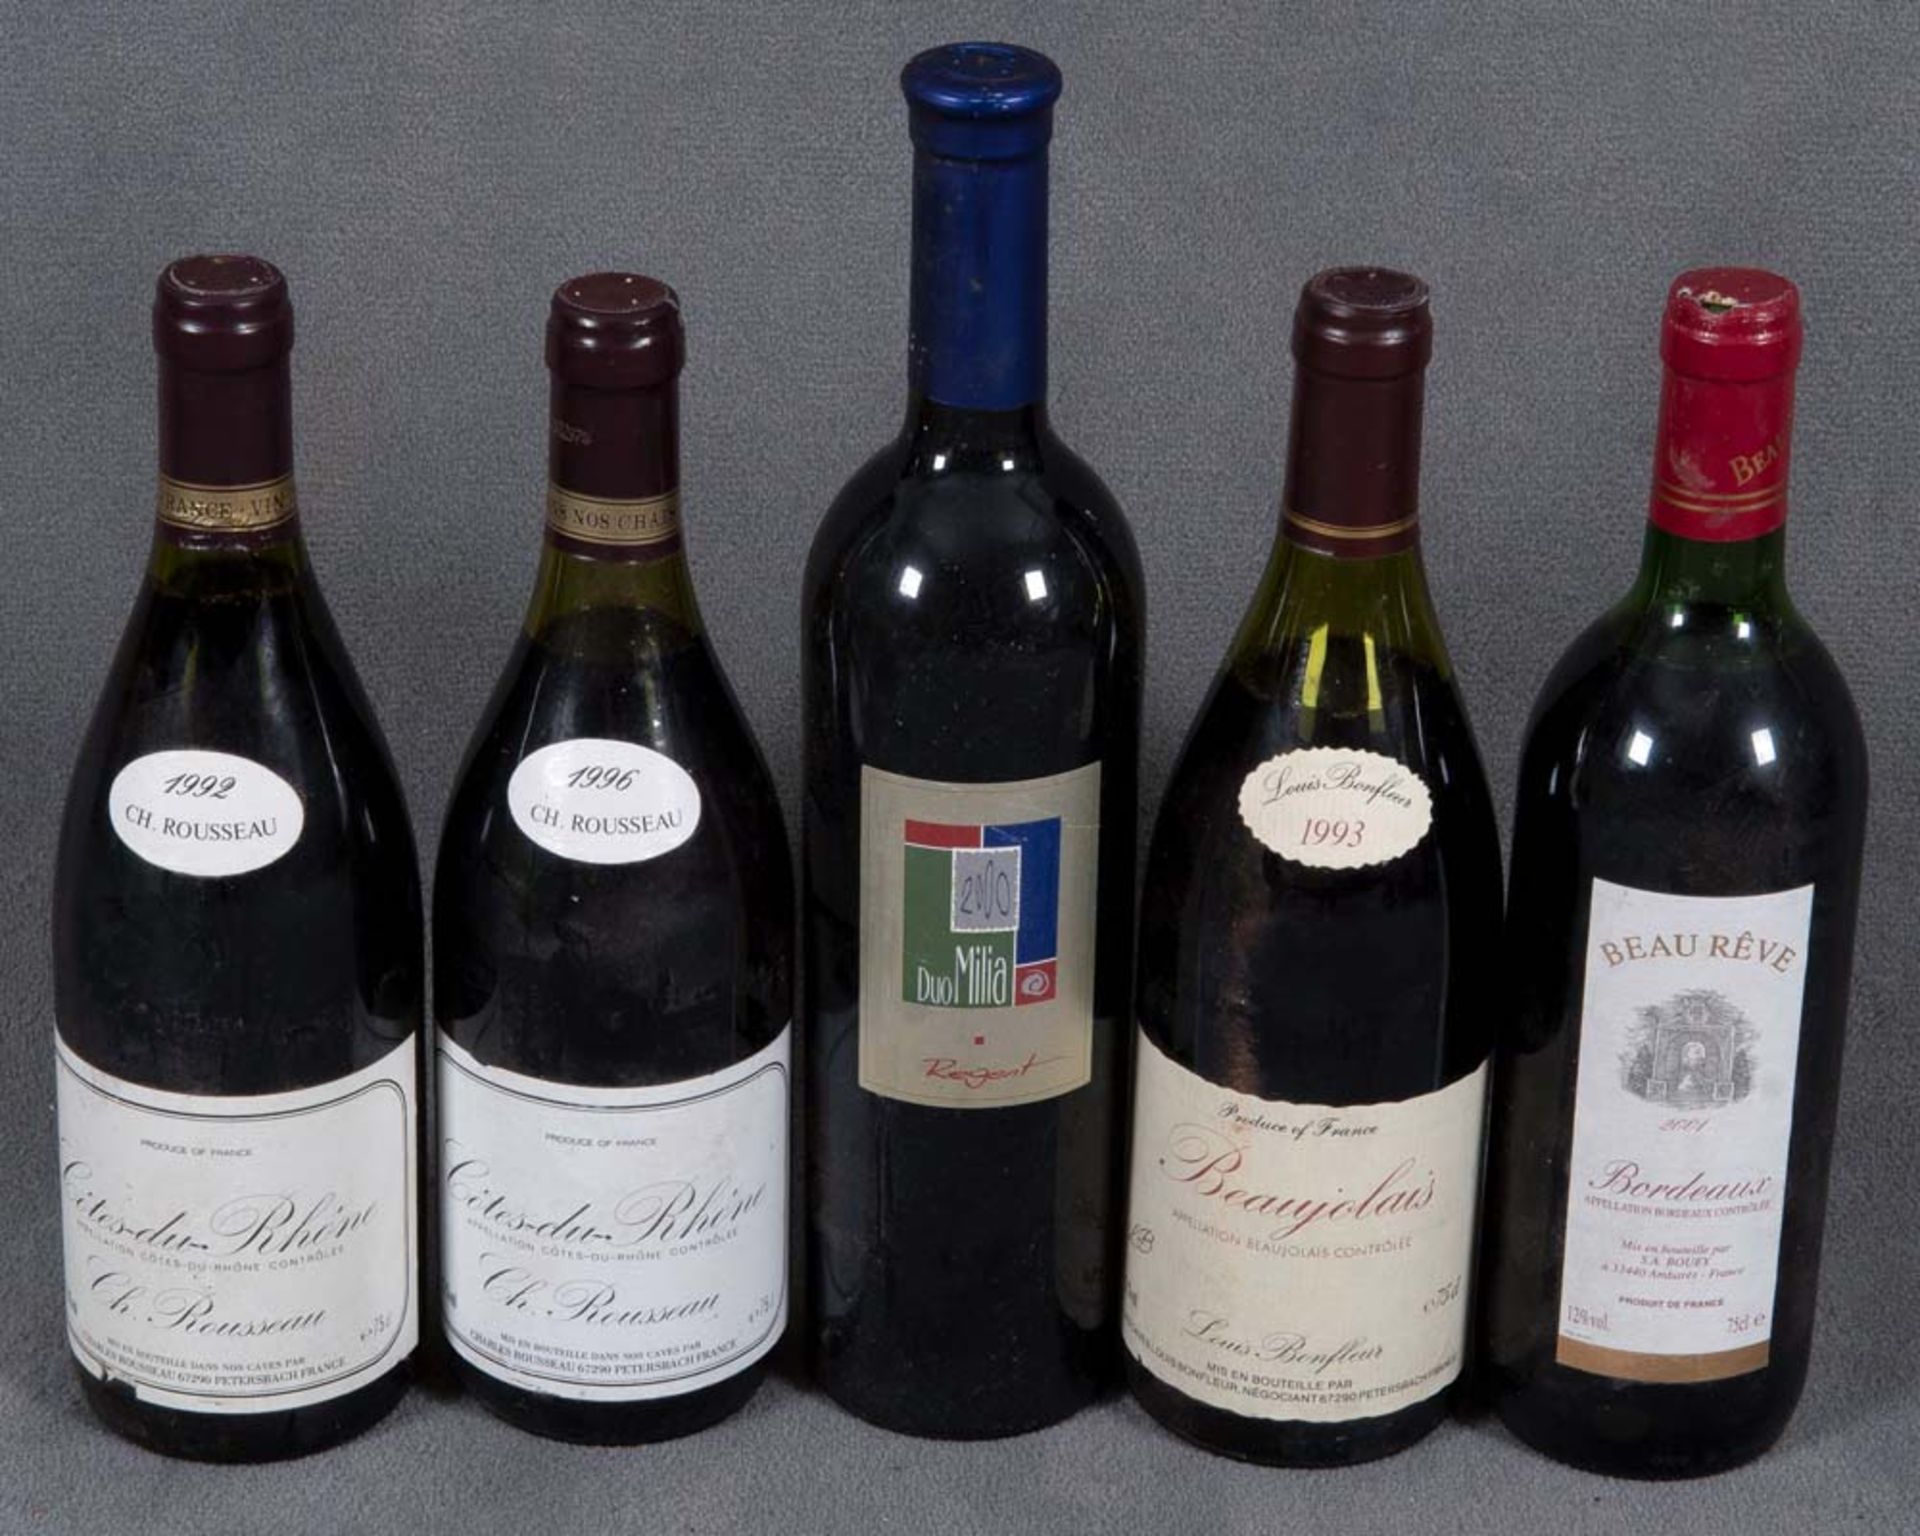 Fünf Flaschen Rotwein: zwei Fl. Côtes du Rhône 1992 und 1996, eine Fl. Duo Milia Regent 2000, eine